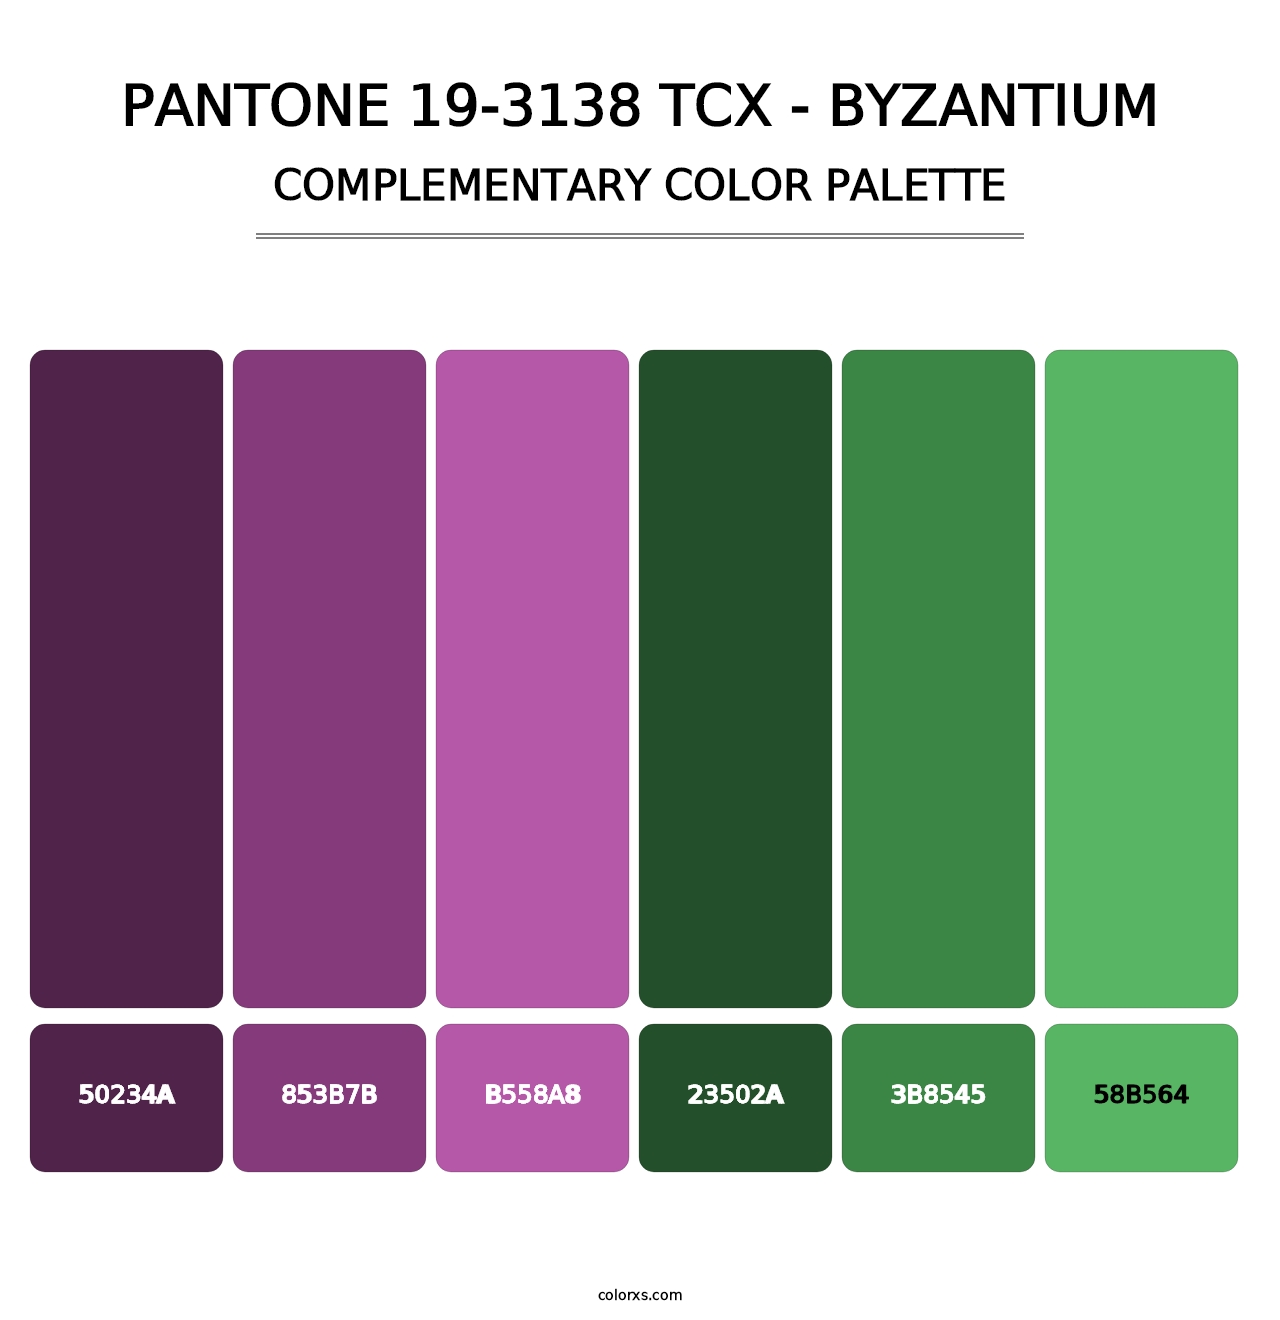 PANTONE 19-3138 TCX - Byzantium - Complementary Color Palette